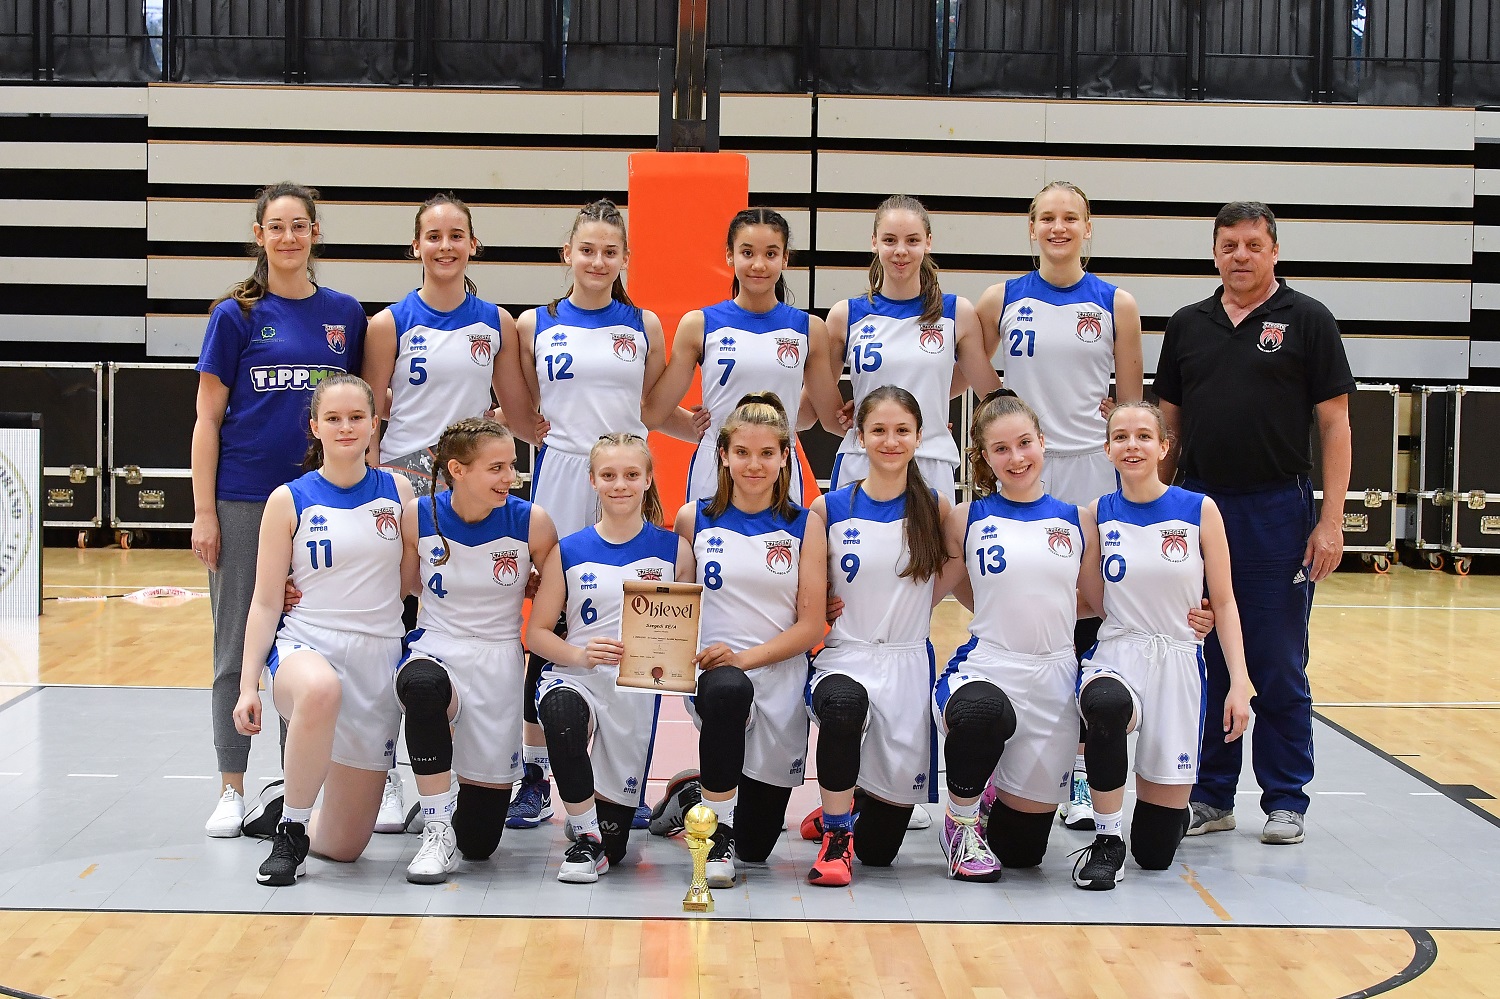 A Szegedi KE nyerte a leány serdülő B döntőt